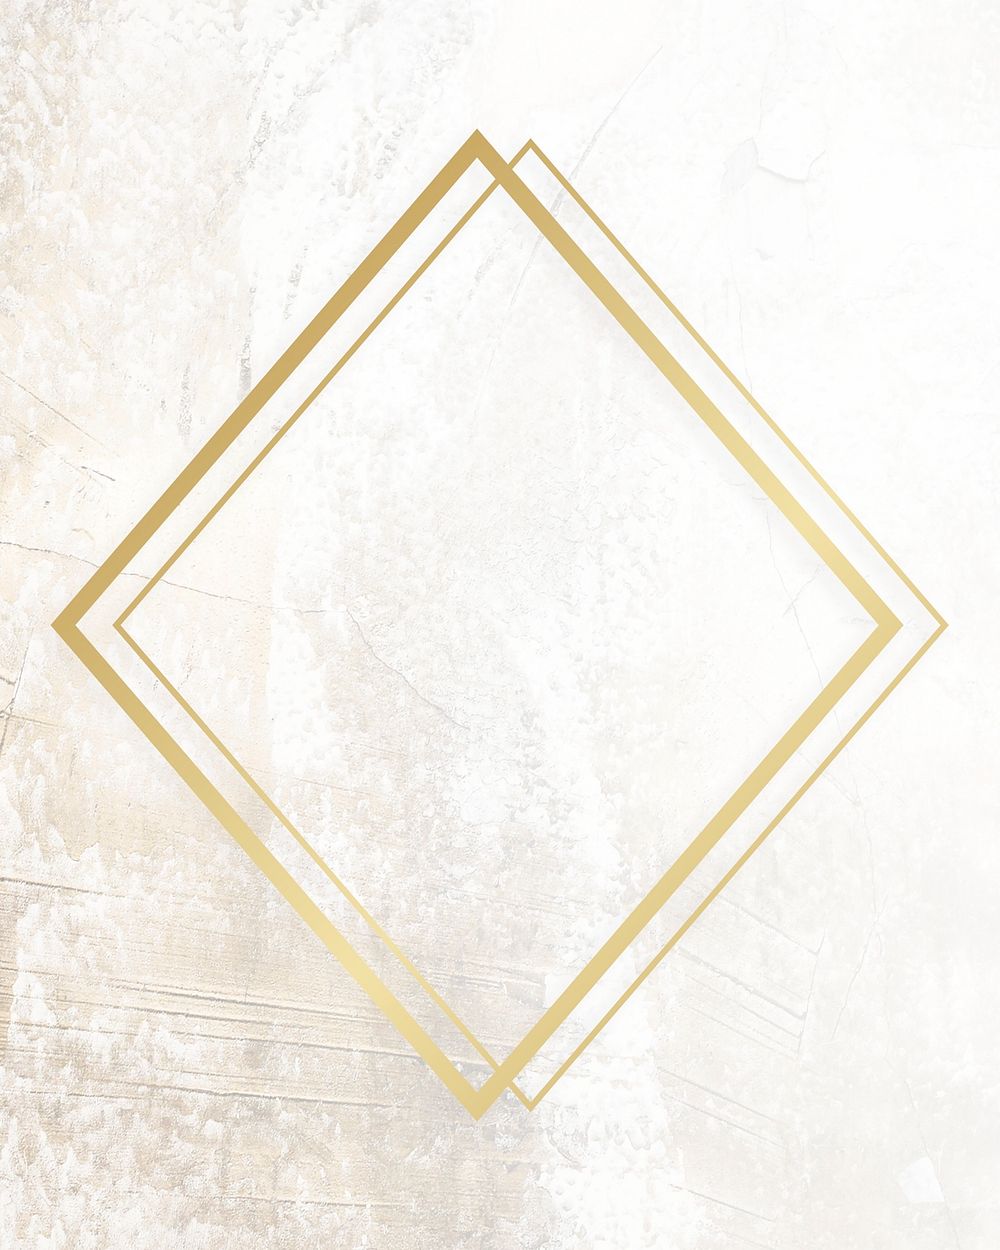 Golden framed rhombus on a grunge texture